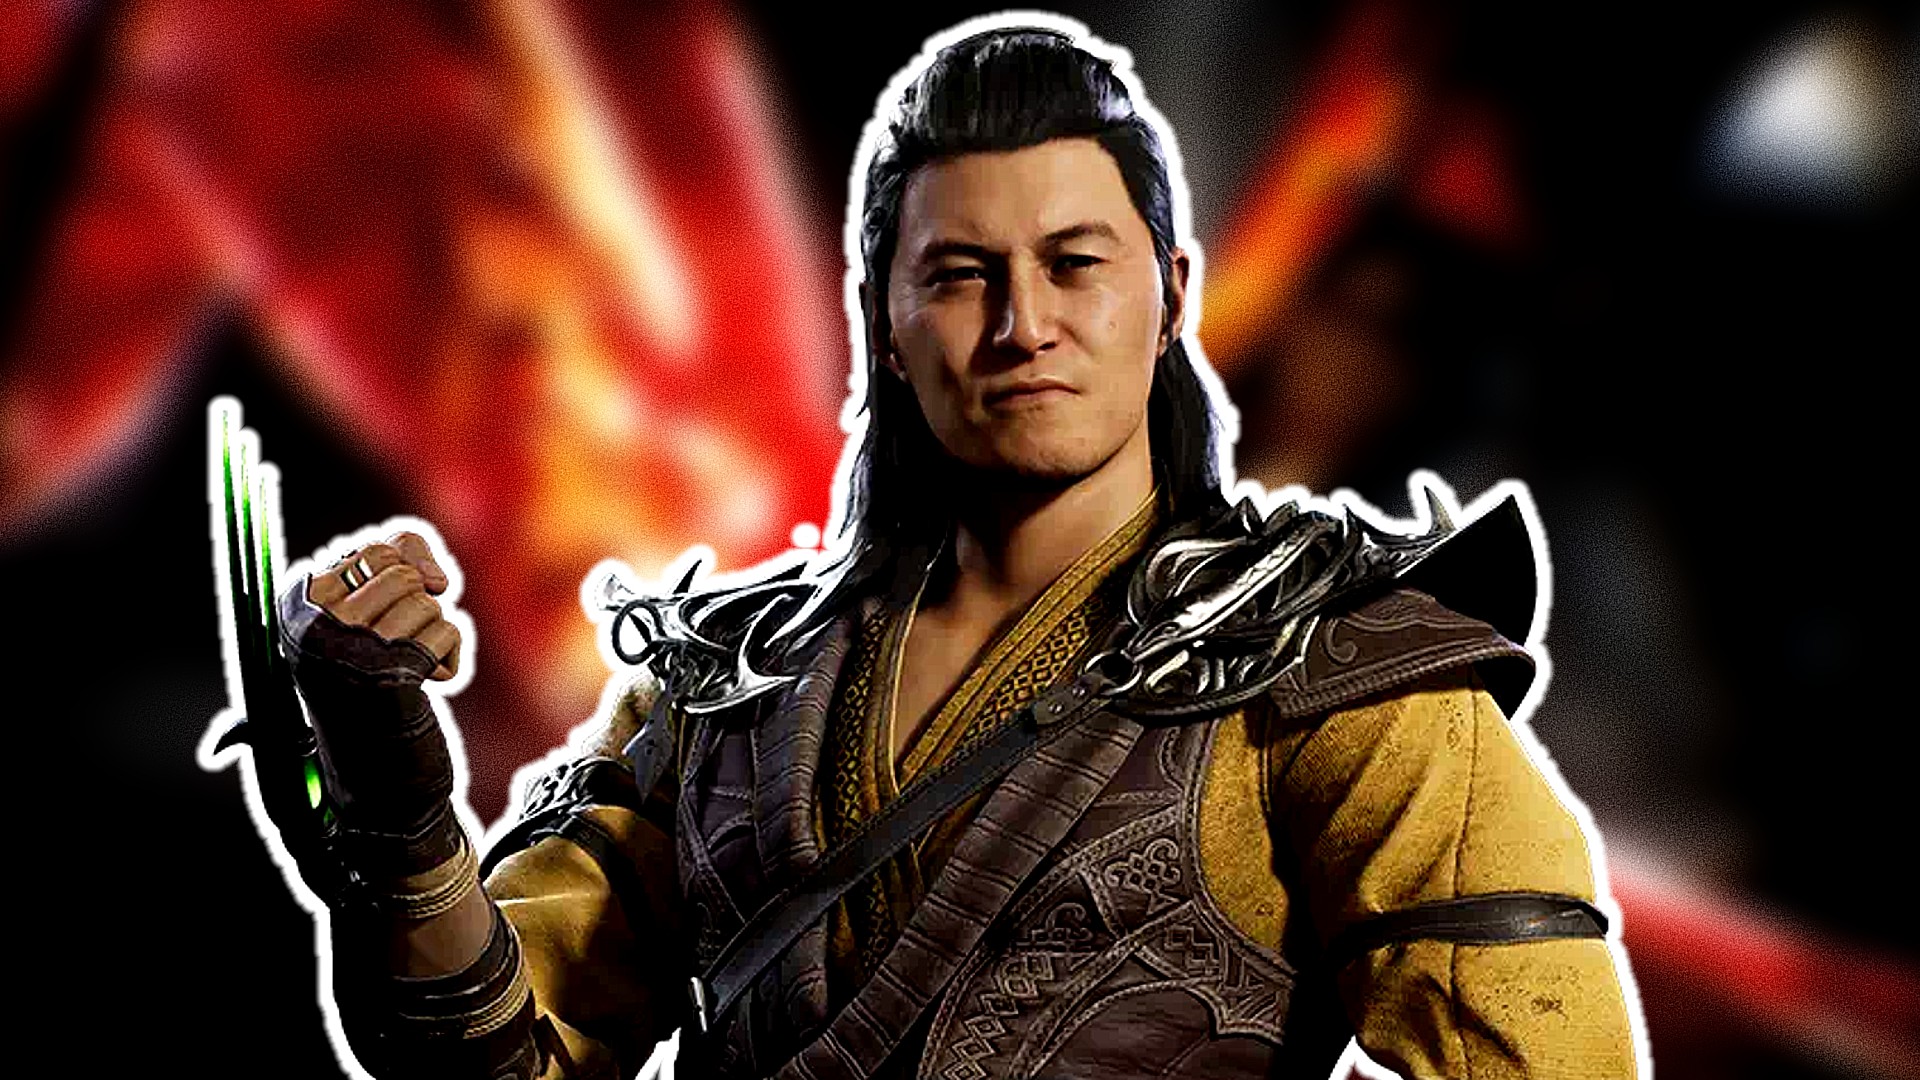 Mortal Kombat 3 - Fatality 2 - Shang Tsung 